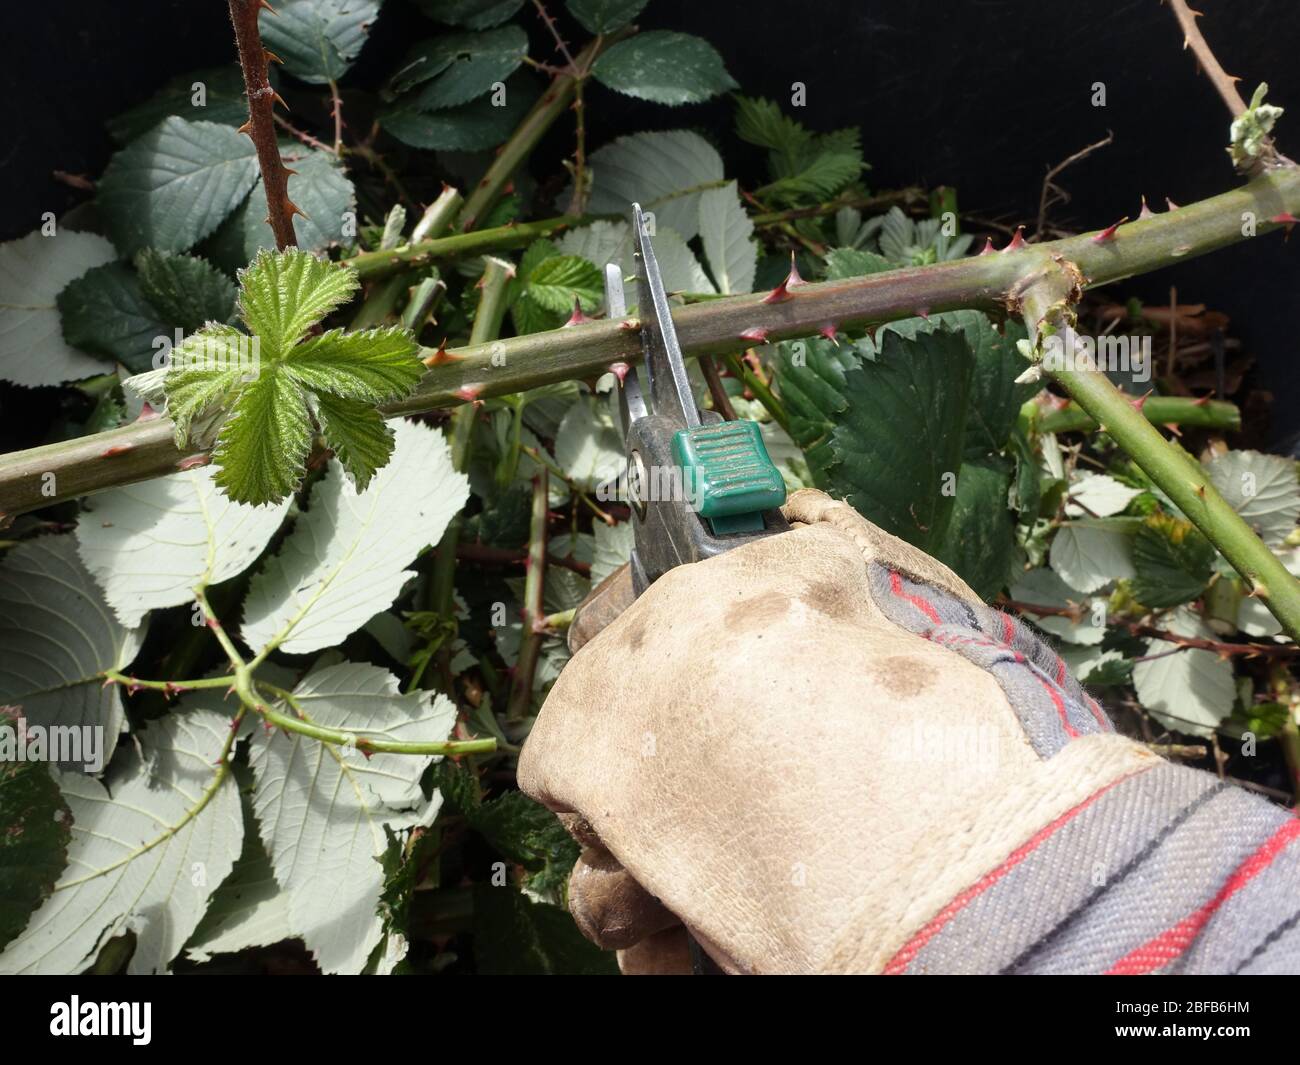 invasive Armenische Brombeere, Gartenbrombeere (Rubus armeniacus) - Gärtner schneidet  Ranken mit einer Gartenschere, Weilerswist, Nordrhein-Westfalen Stock Photo